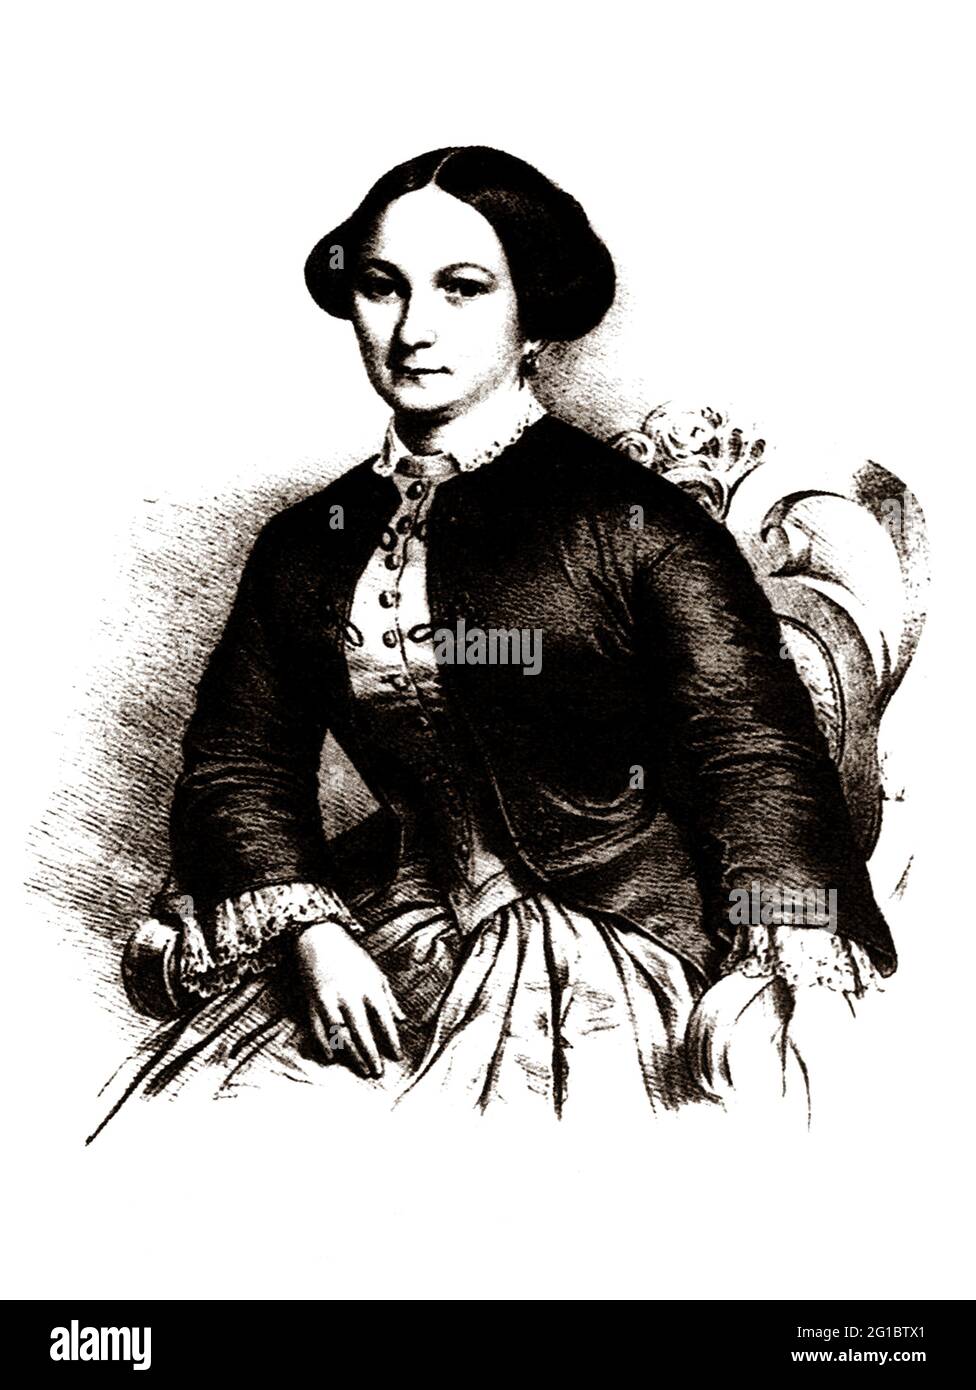 1840 c., Milan , ITALIE : la soprano italienne FANNY SALVINI DONATELLI ( Florence 1815 - Milan 1851 ), née Francesca LUCCHI . Connu pour soutenir le rôle de Violetta dans la première mondiale de la TRAVIATA de Giuseppe Verdi ( 1853 ). Elle était la deuxième femme en 1831 de GIUSEPPE SALVINI et la belle-mère de son fils TOMMASO SALVINI , tous deux étaient des acteurs célèbres du théâtre et une famille qui donna d'autres noms à sa renommée artistique . Quittant Salvini en 1842, elle est veuve en 1844, plus tard mariée la basse GAETANO DONATELLI . Portrait par graveur inconnu .- SALVINI-DONATELLI - OPÉRA LIRICA - OPÉRA LIRICA - Banque D'Images